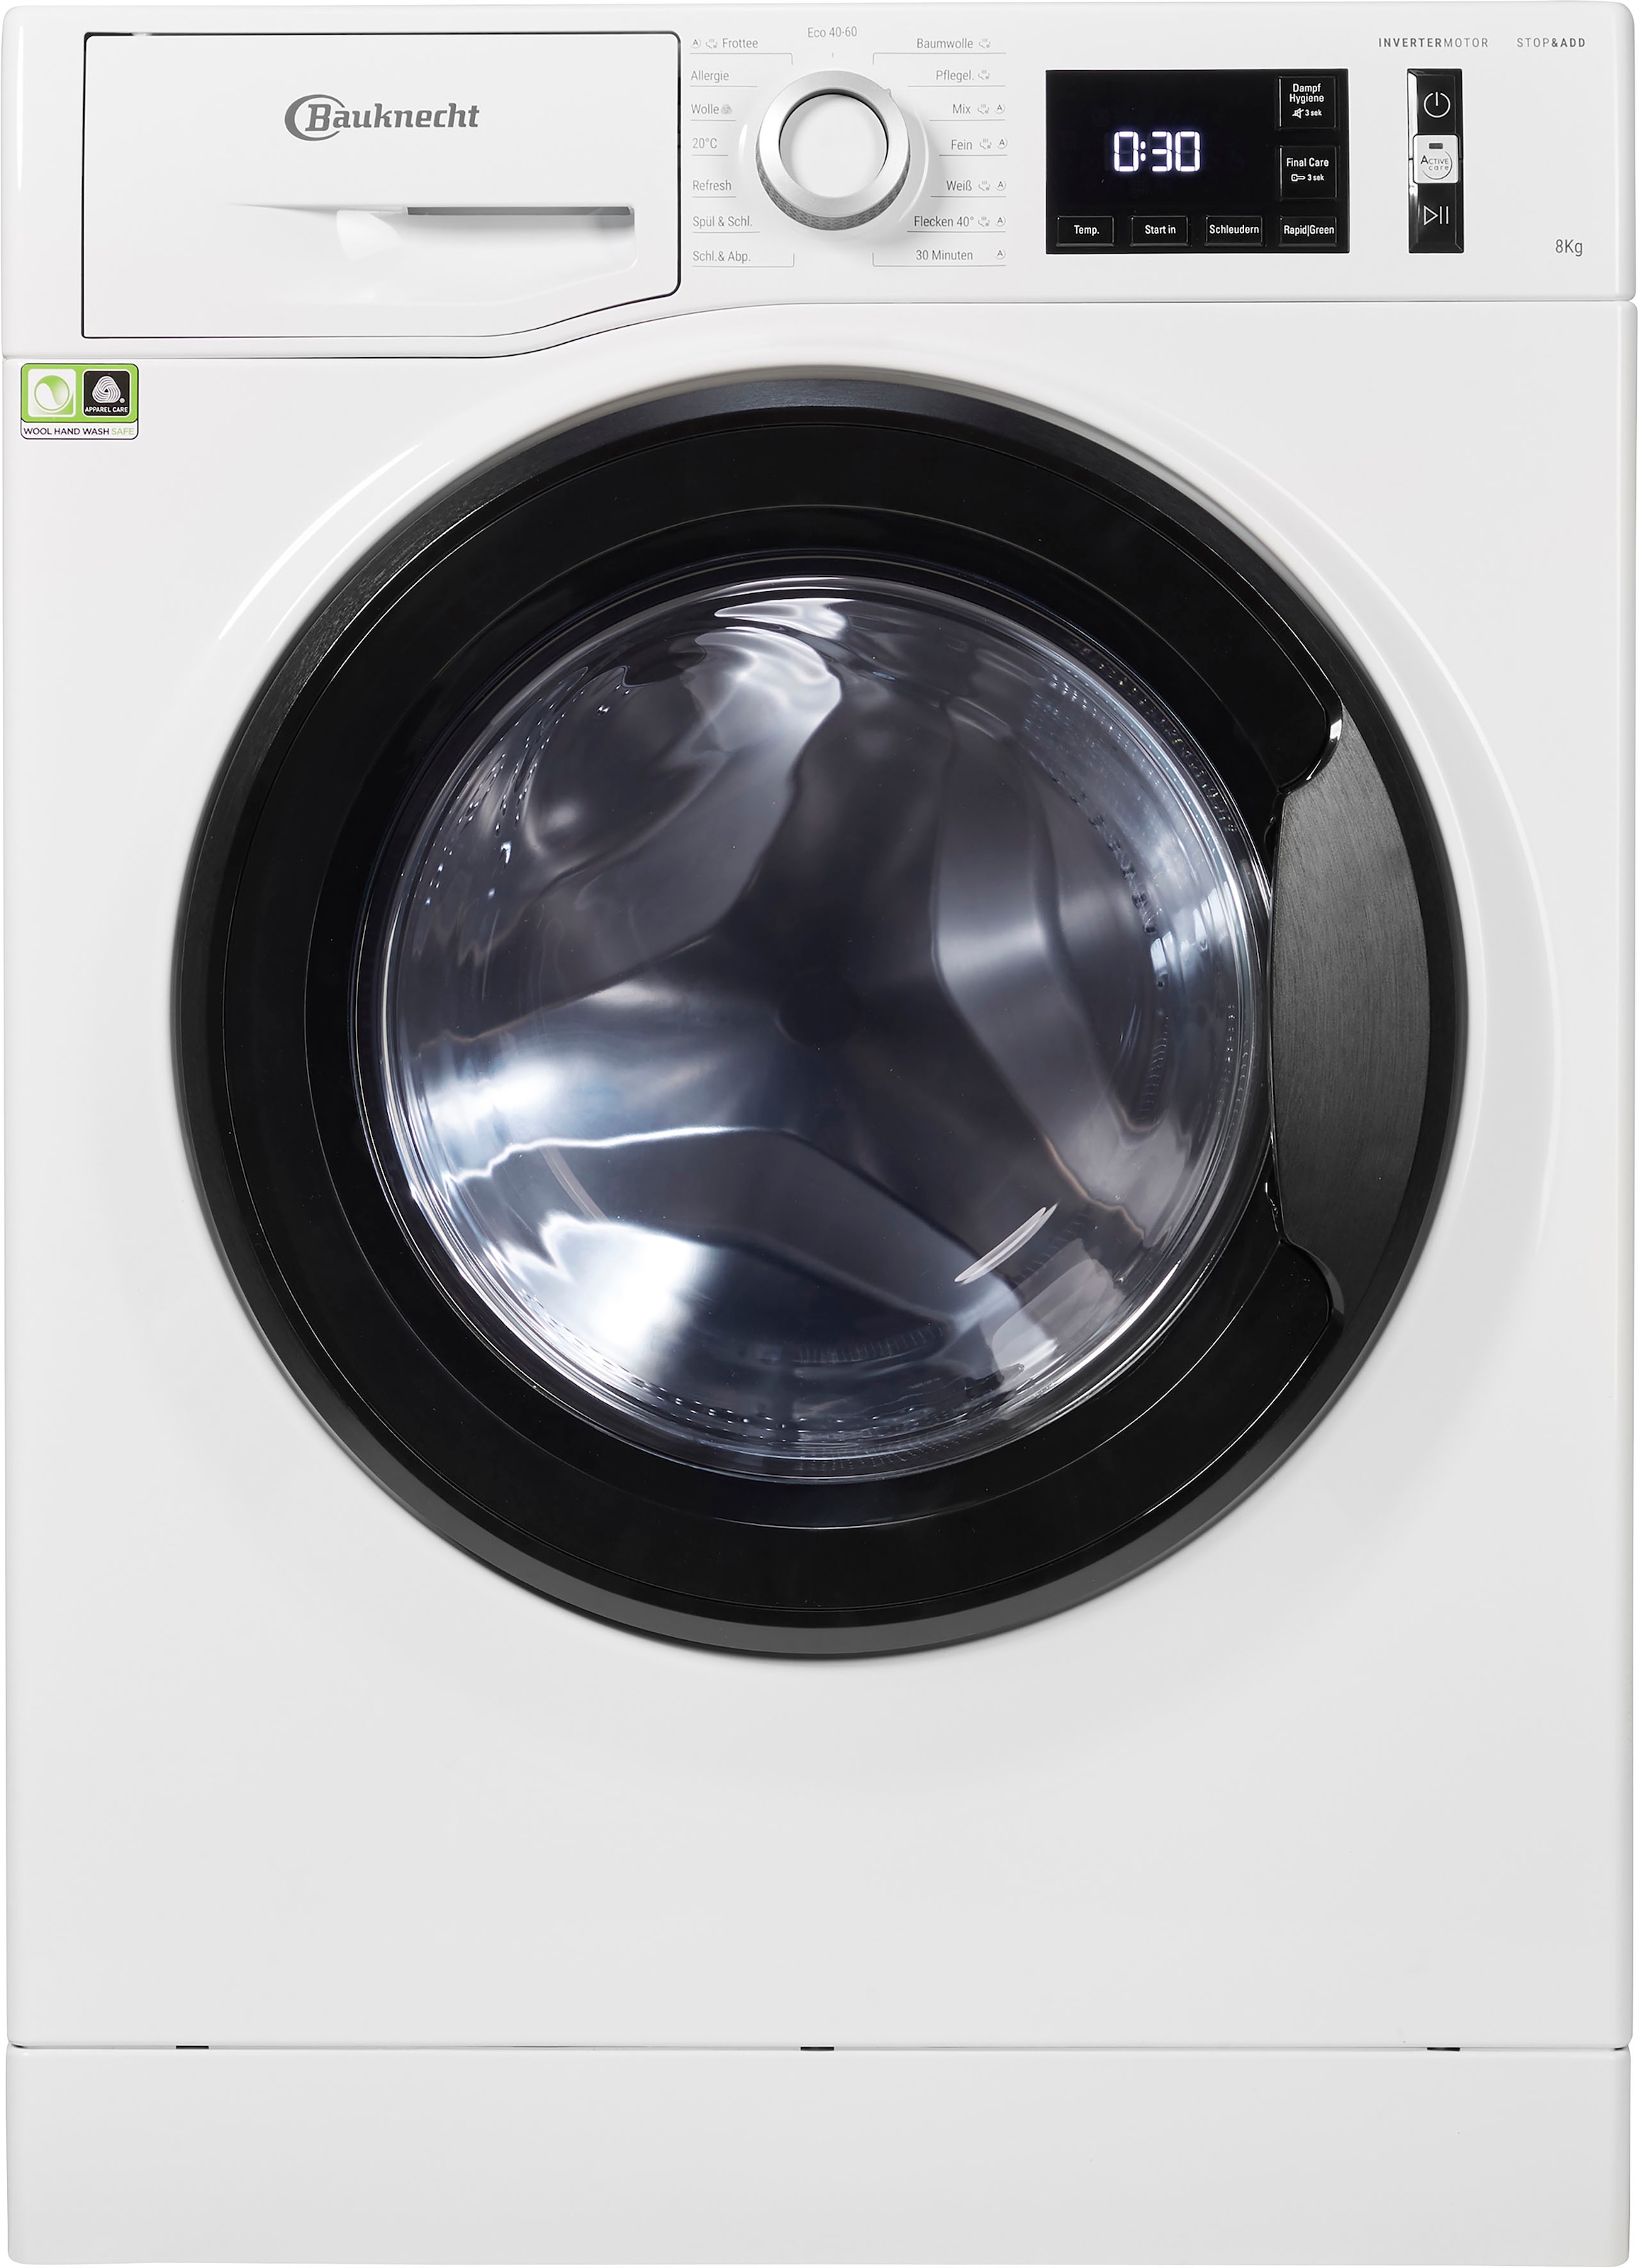 BAUKNECHT Waschmaschine 8421, kg, »Super bei Super Eco online 8421«, OTTO 8 jetzt U/min 1400 Eco